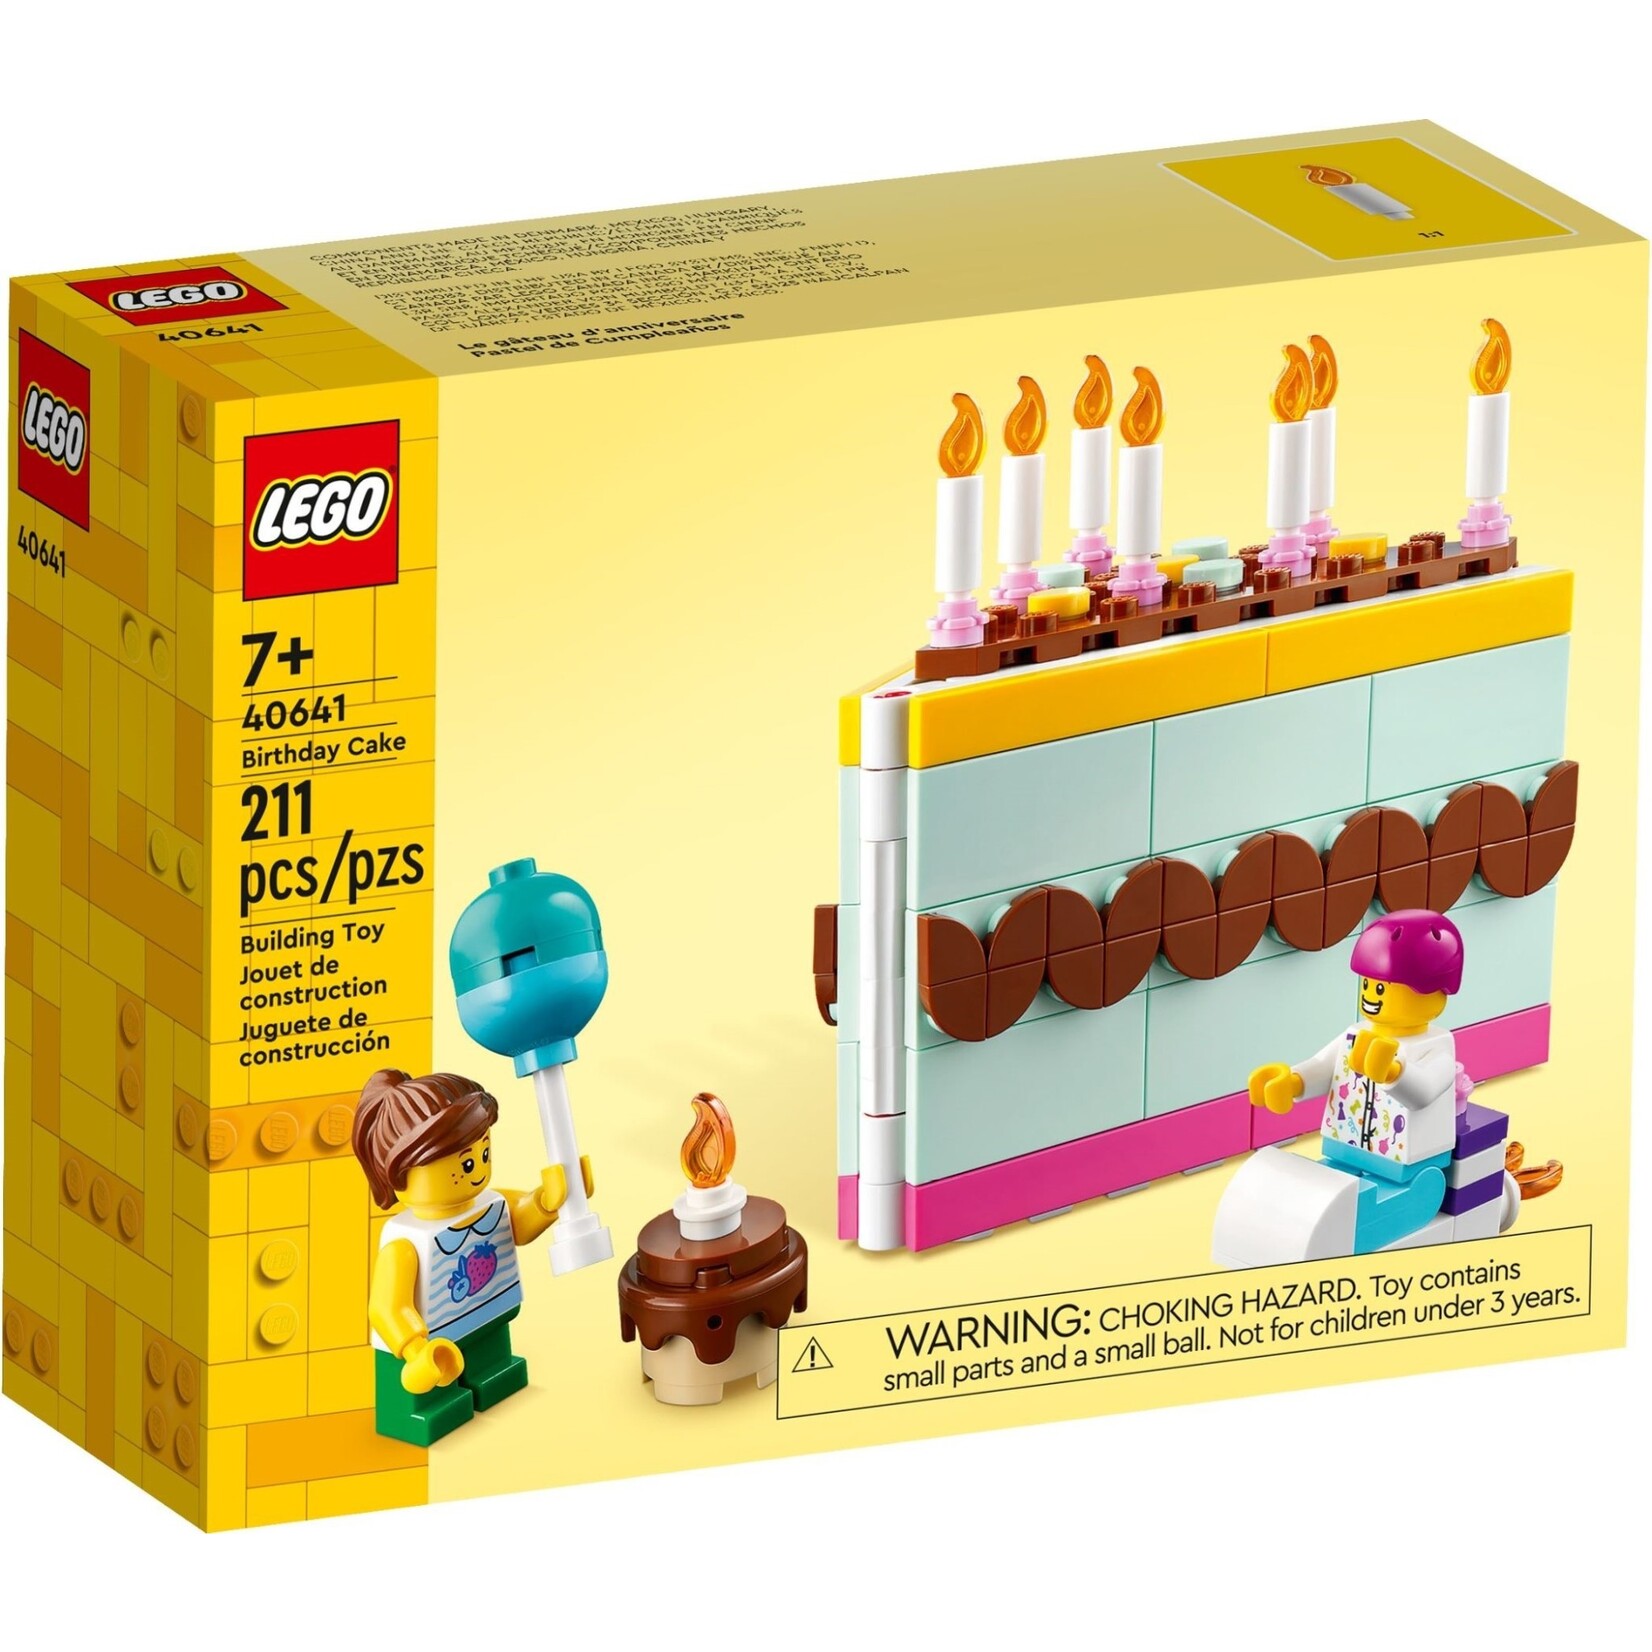 LEGO LEGO Verjaardagstaart - 40641